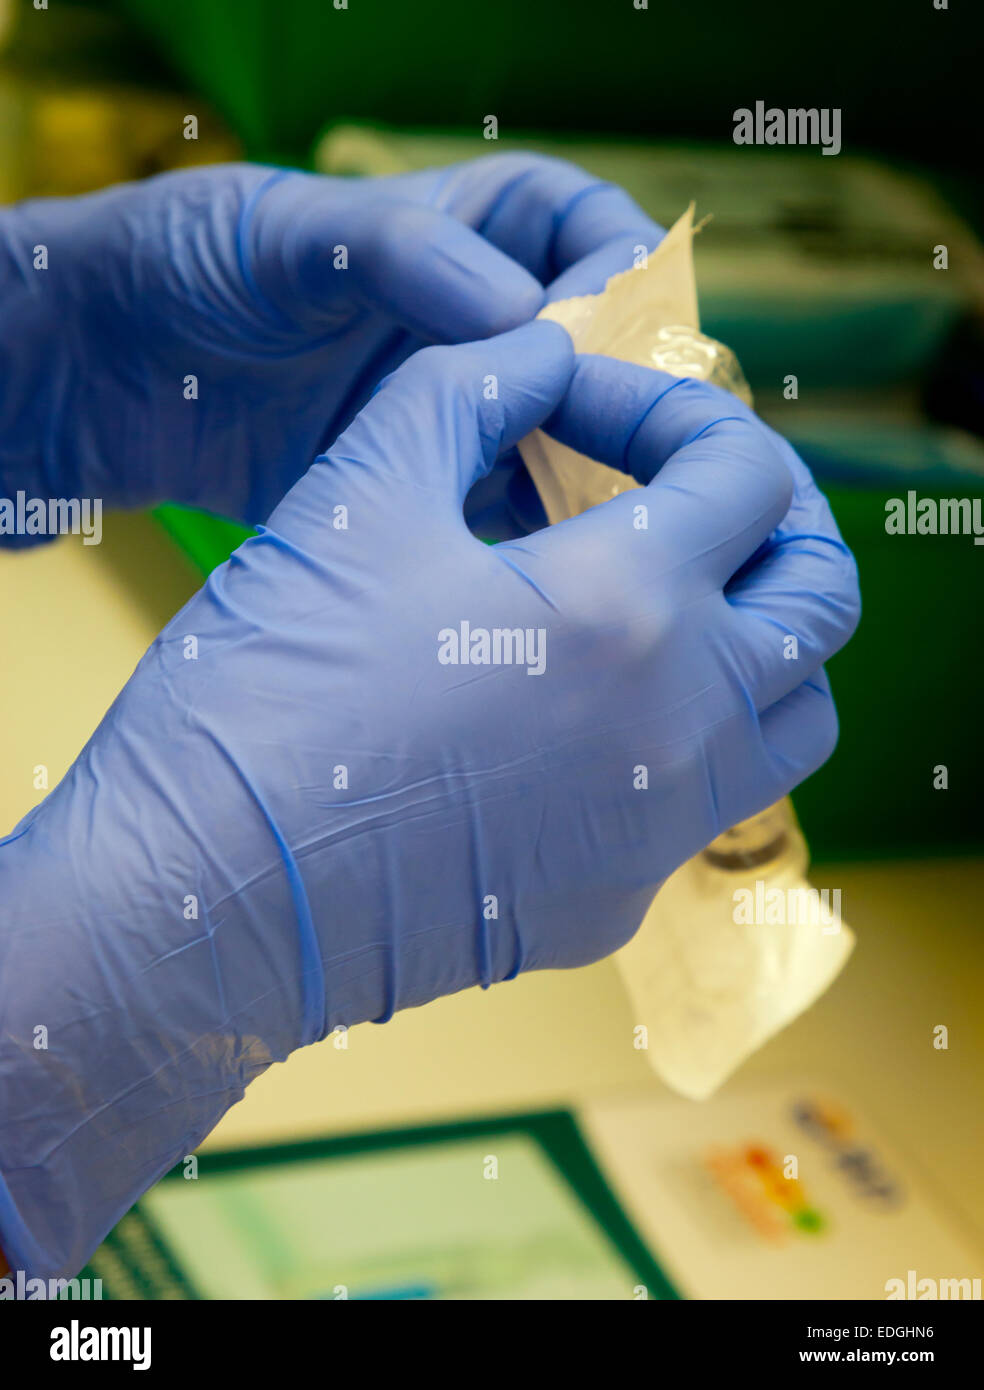 Krankenschwester mit blauen Gummihandschuhen sterilisierte Verpackung in einem Krankenzimmer Behandlung eine Spritze entfernen Stockfoto